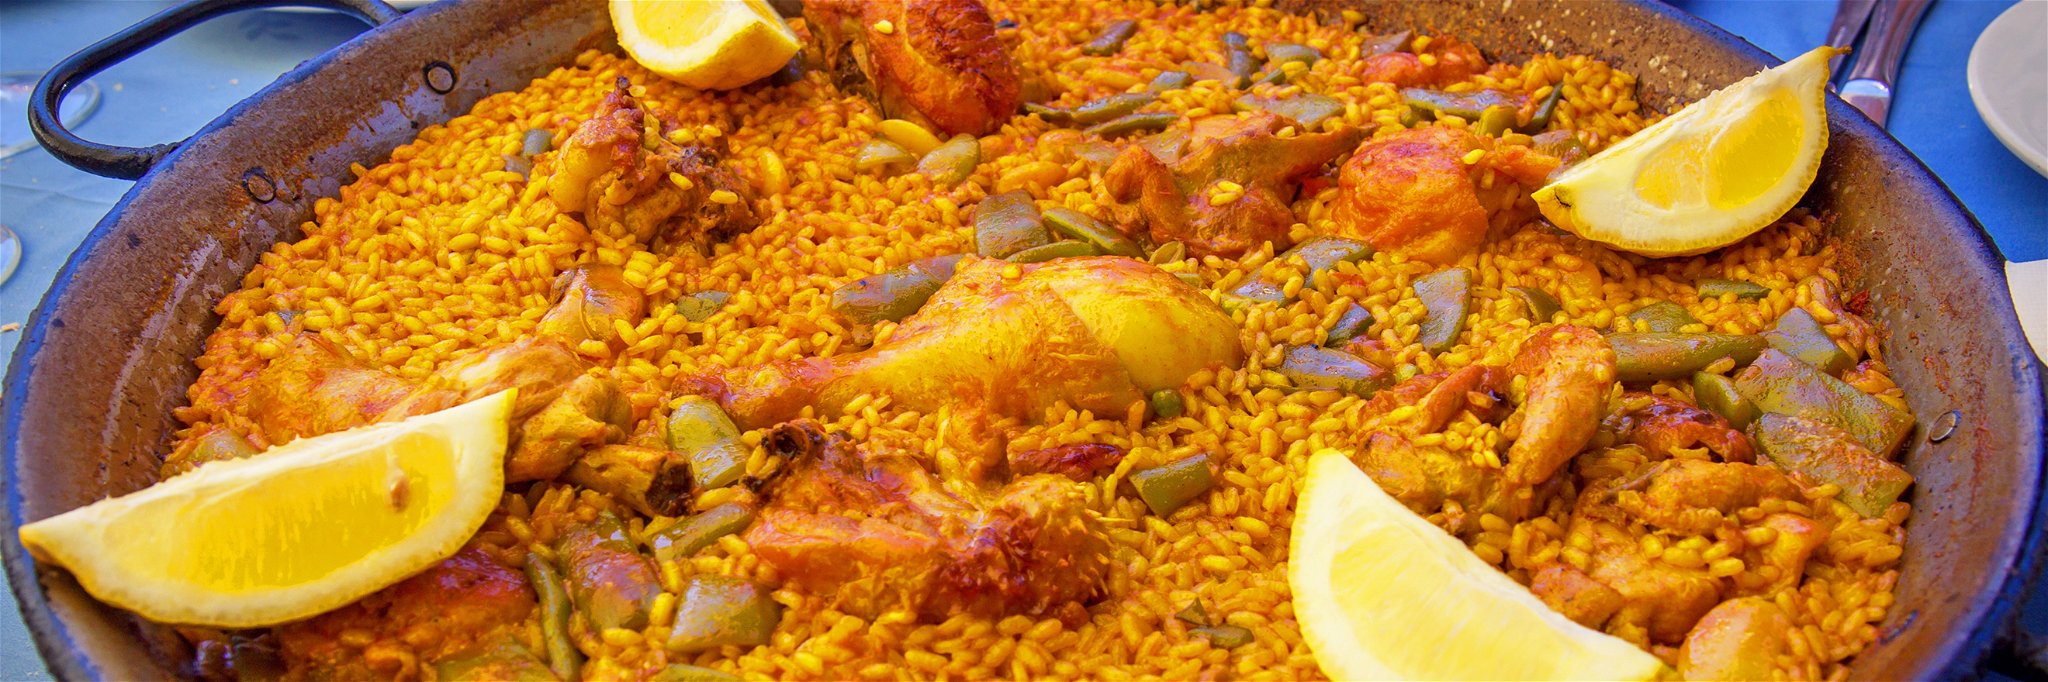 Die Paella Valenciana wird traditionell ohne Fisch zubereitet.